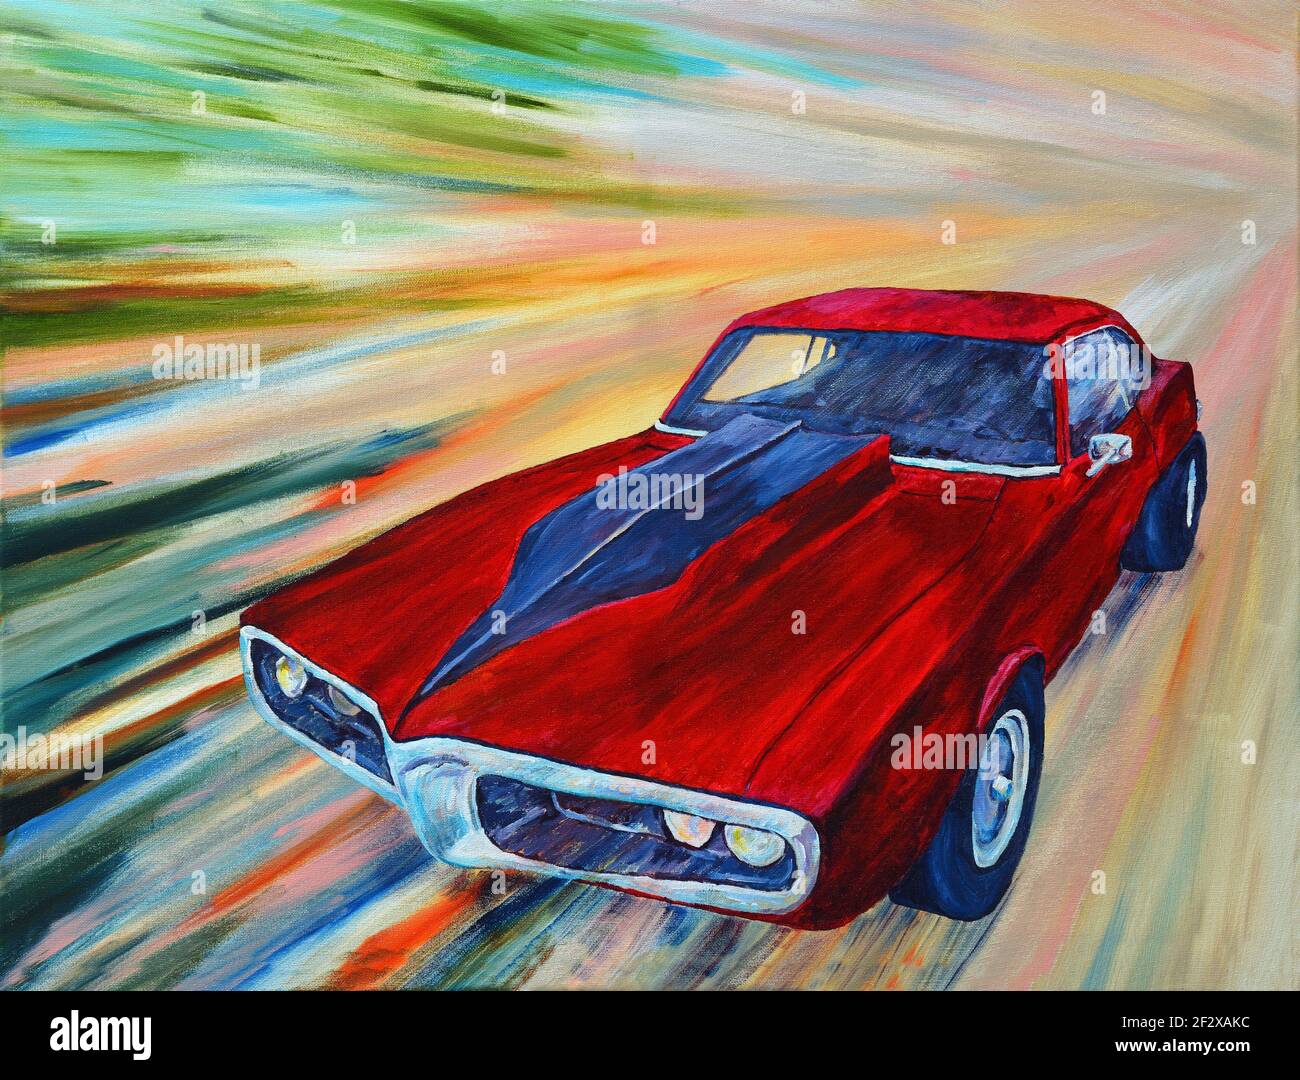 Classic Red Pontiac Firebird American muscle car avec la vitesse abstraite affecter l'arrière-plan Banque D'Images